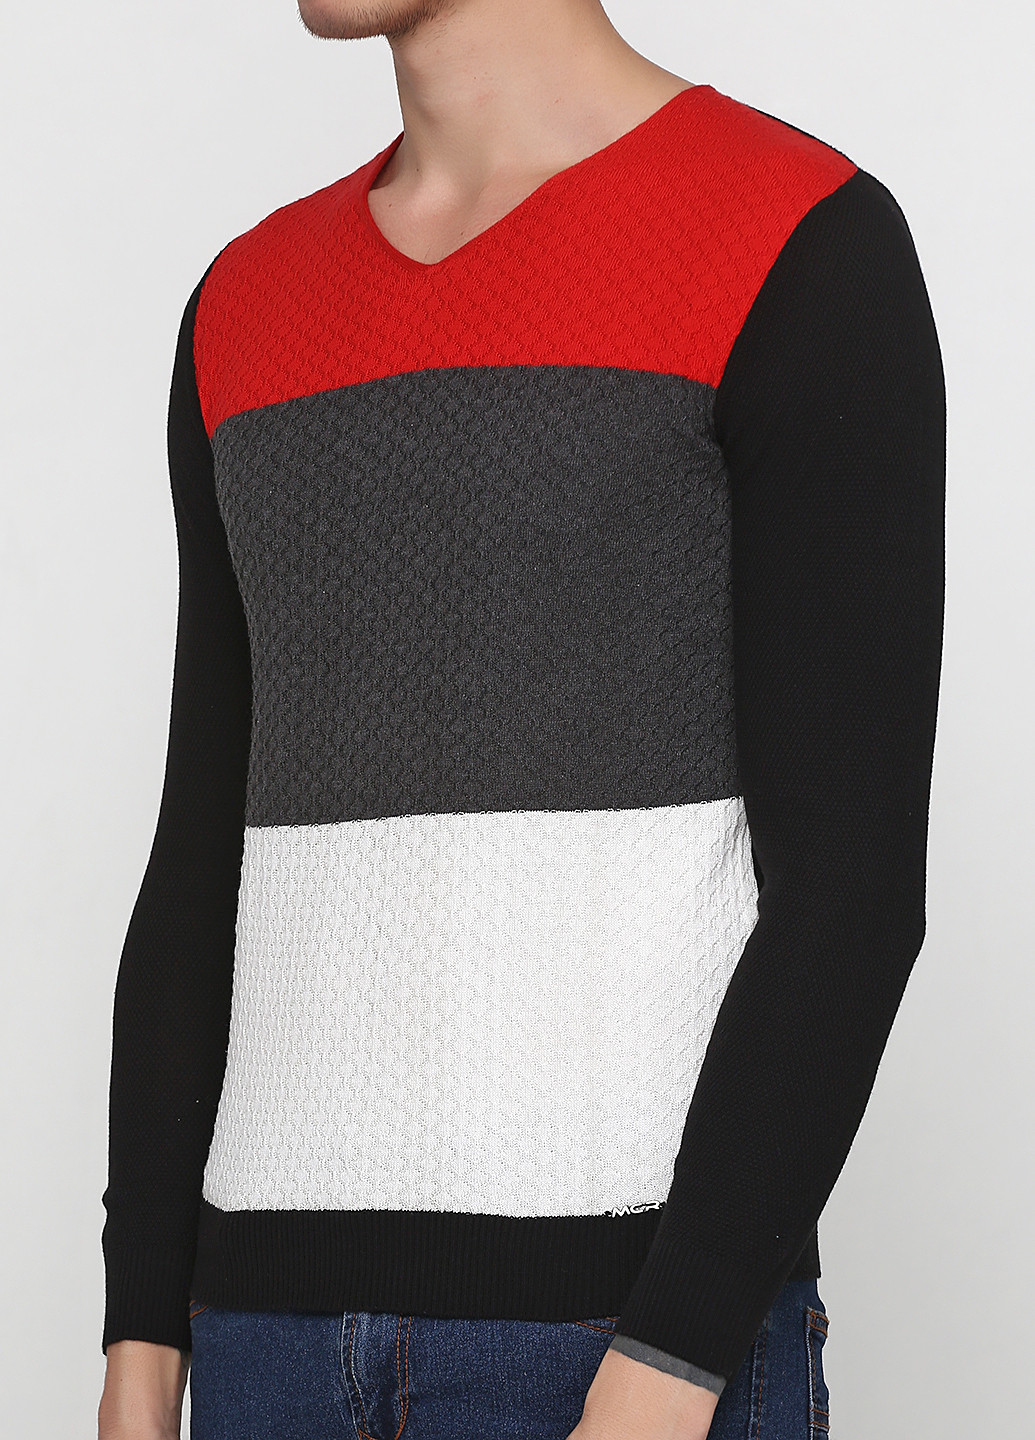 Черный демисезонный пуловер пуловер MCR